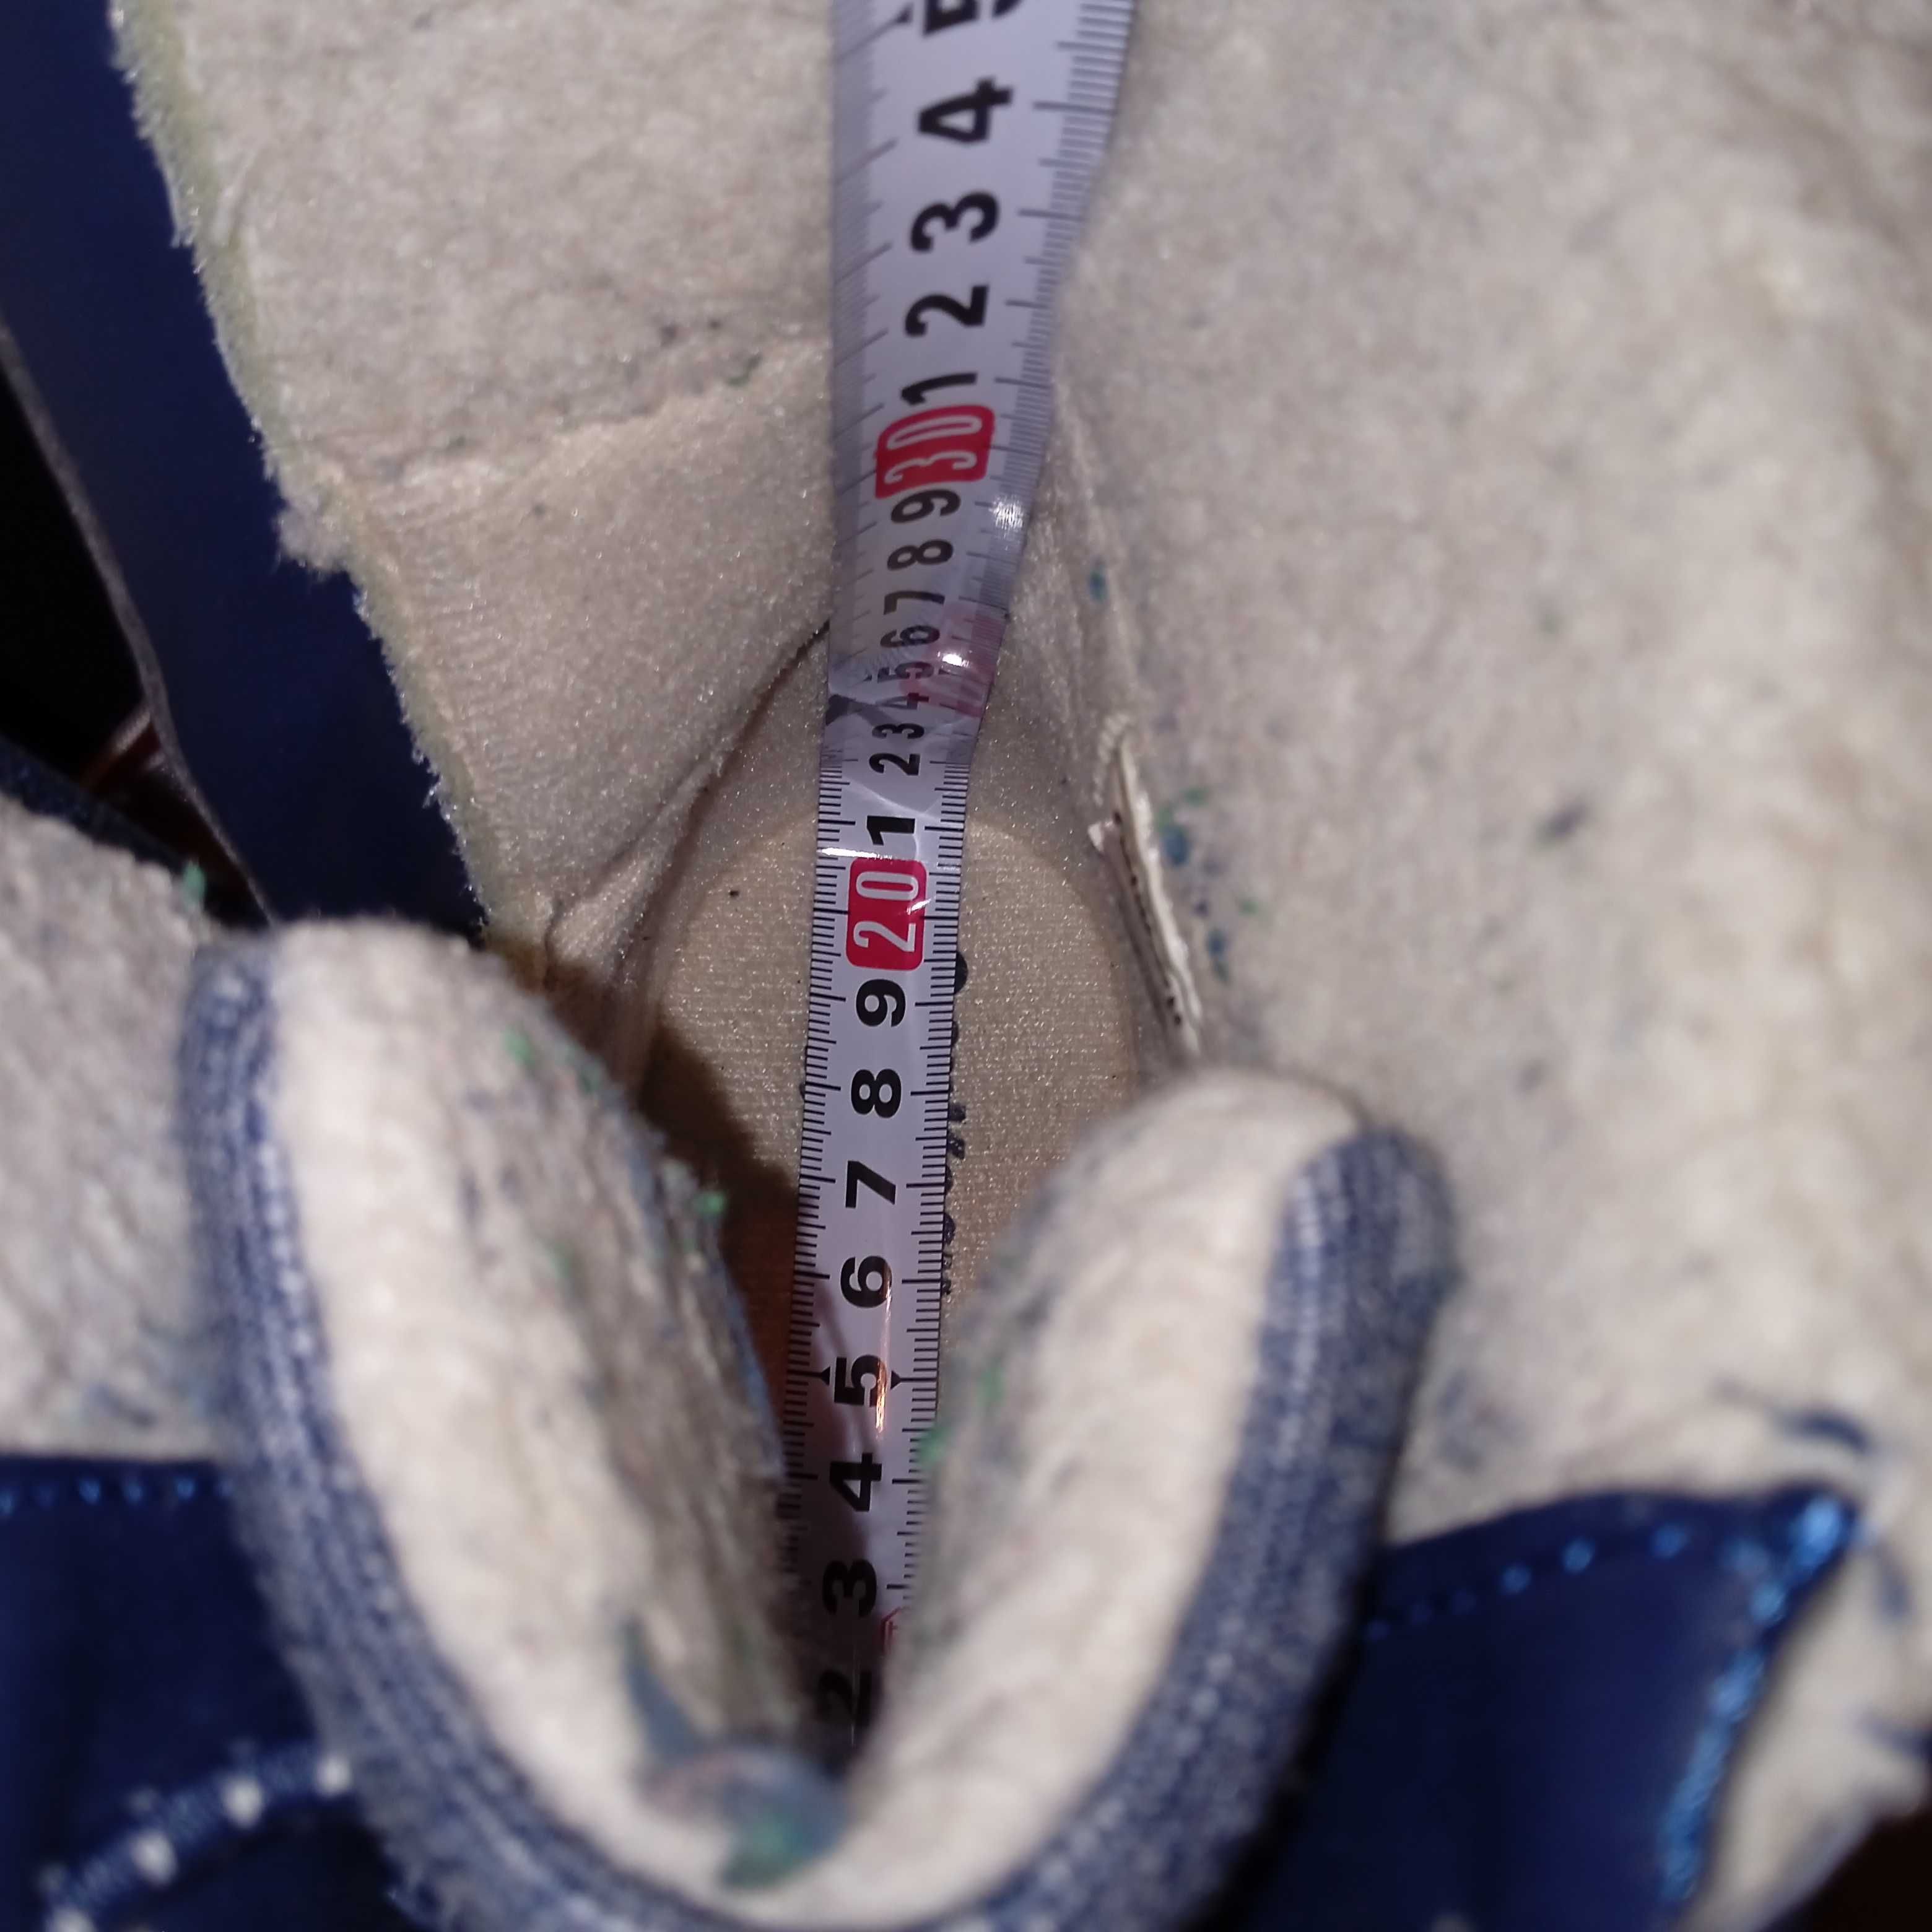 Зимние ботинки с каллошой Oshkosh 19.7 cм.